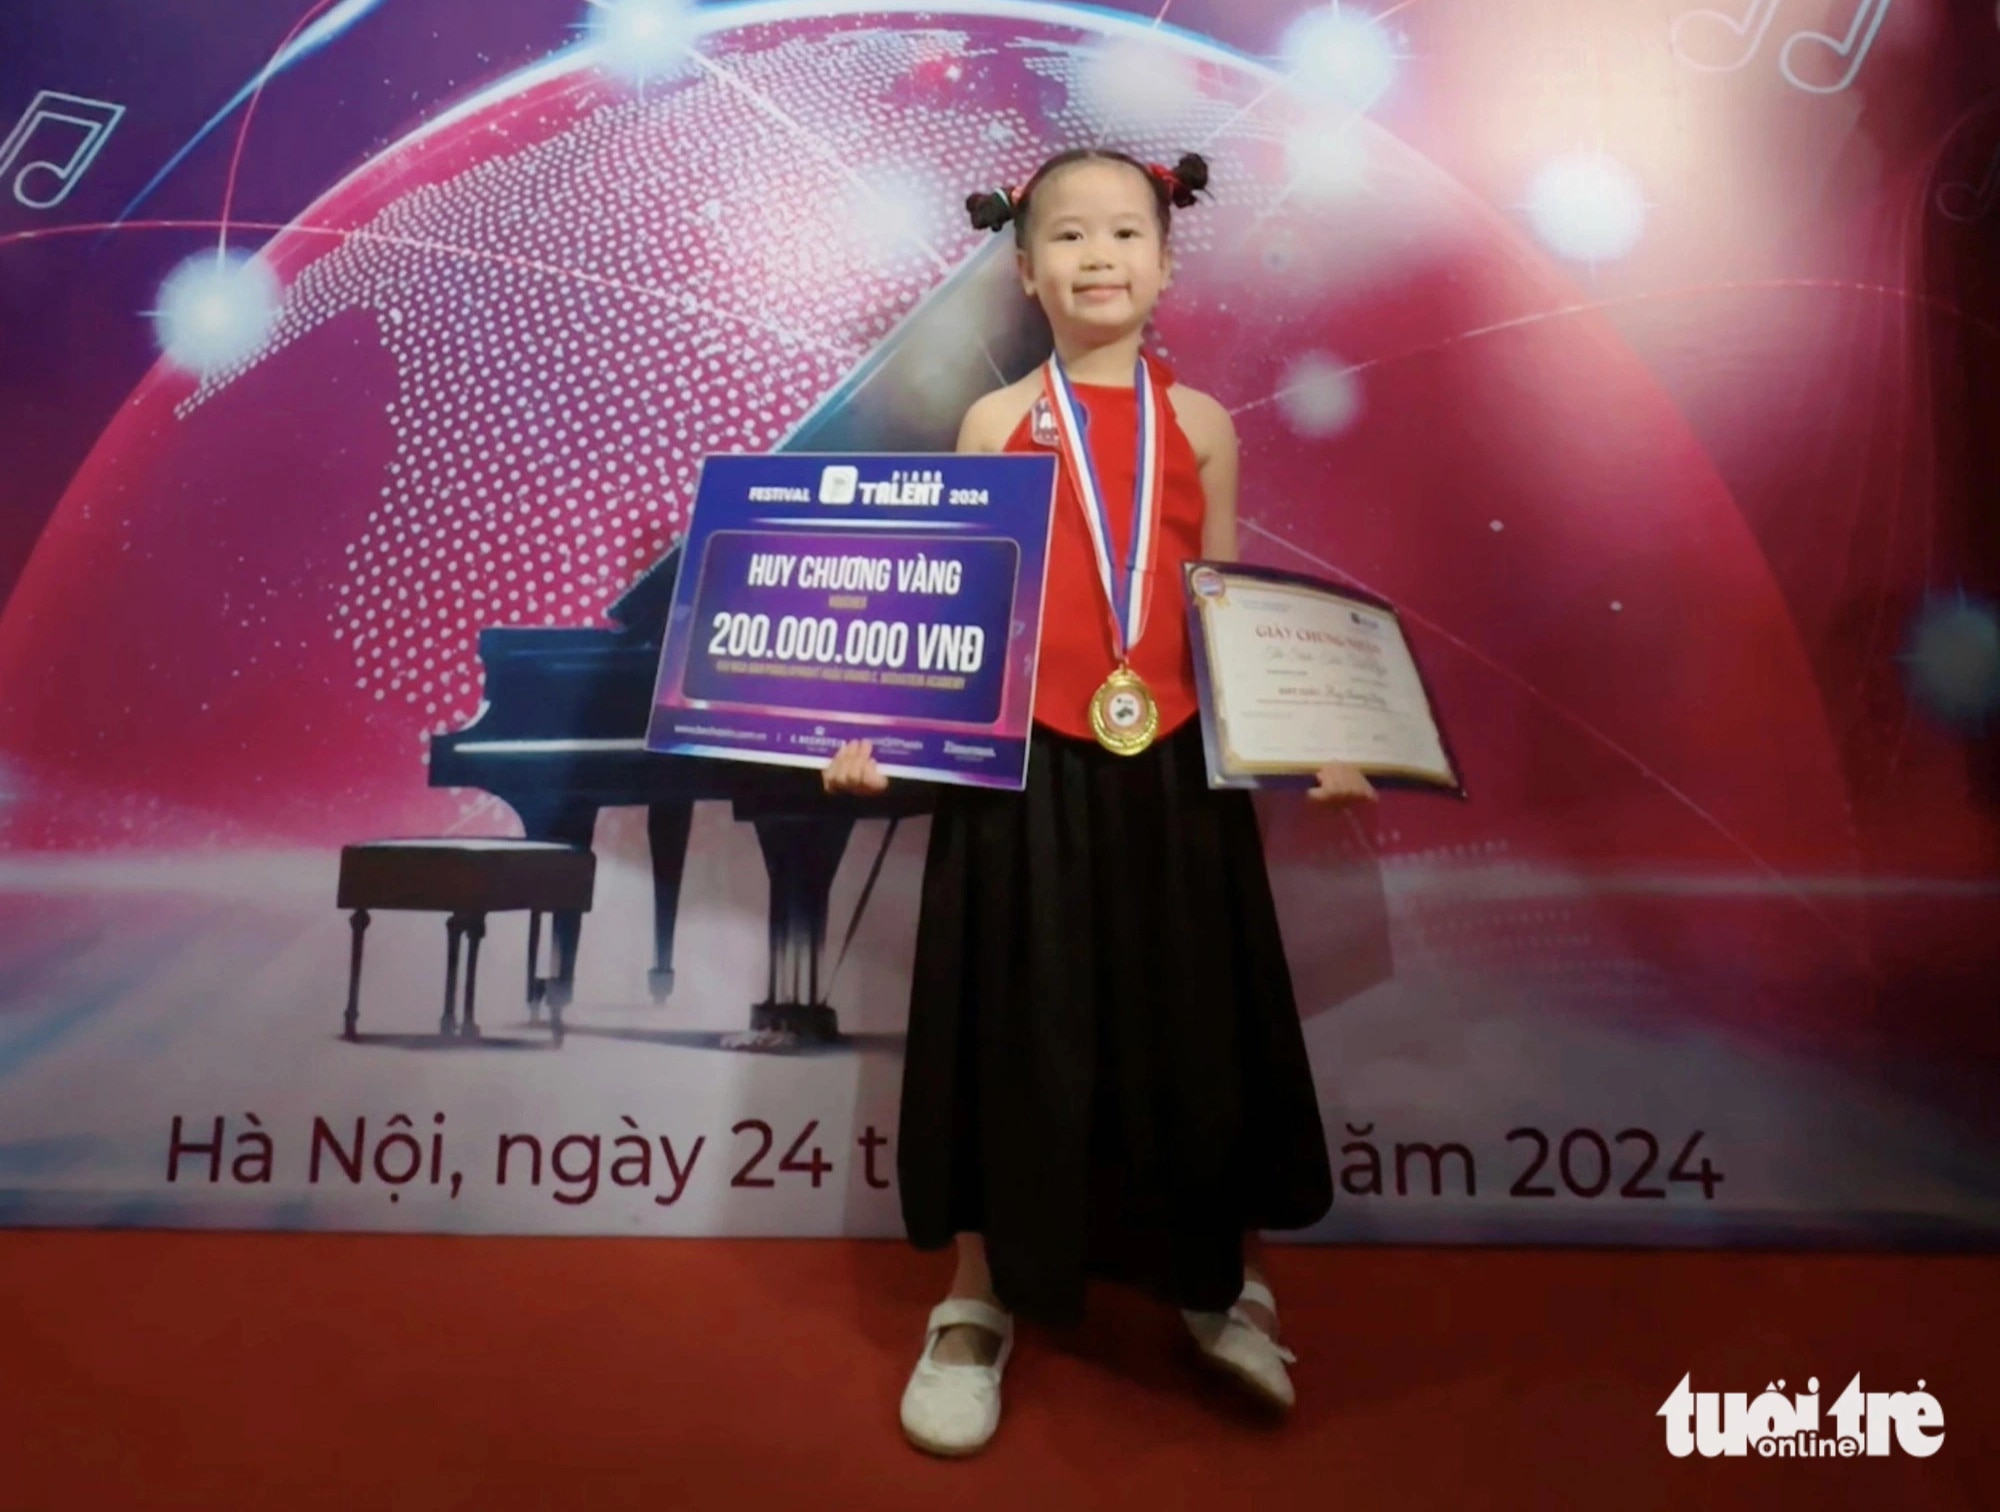 Bé Thái Tuệ Nghi là thí sinh nhỏ tuổi nhất và cũng là thí sinh giành được tấm huy chương vàng tại cuộc thi tìm kiếm tài năng piano toàn quốc vừa diễn ra tại Hà Nội - Ảnh: MỸ HẠNH